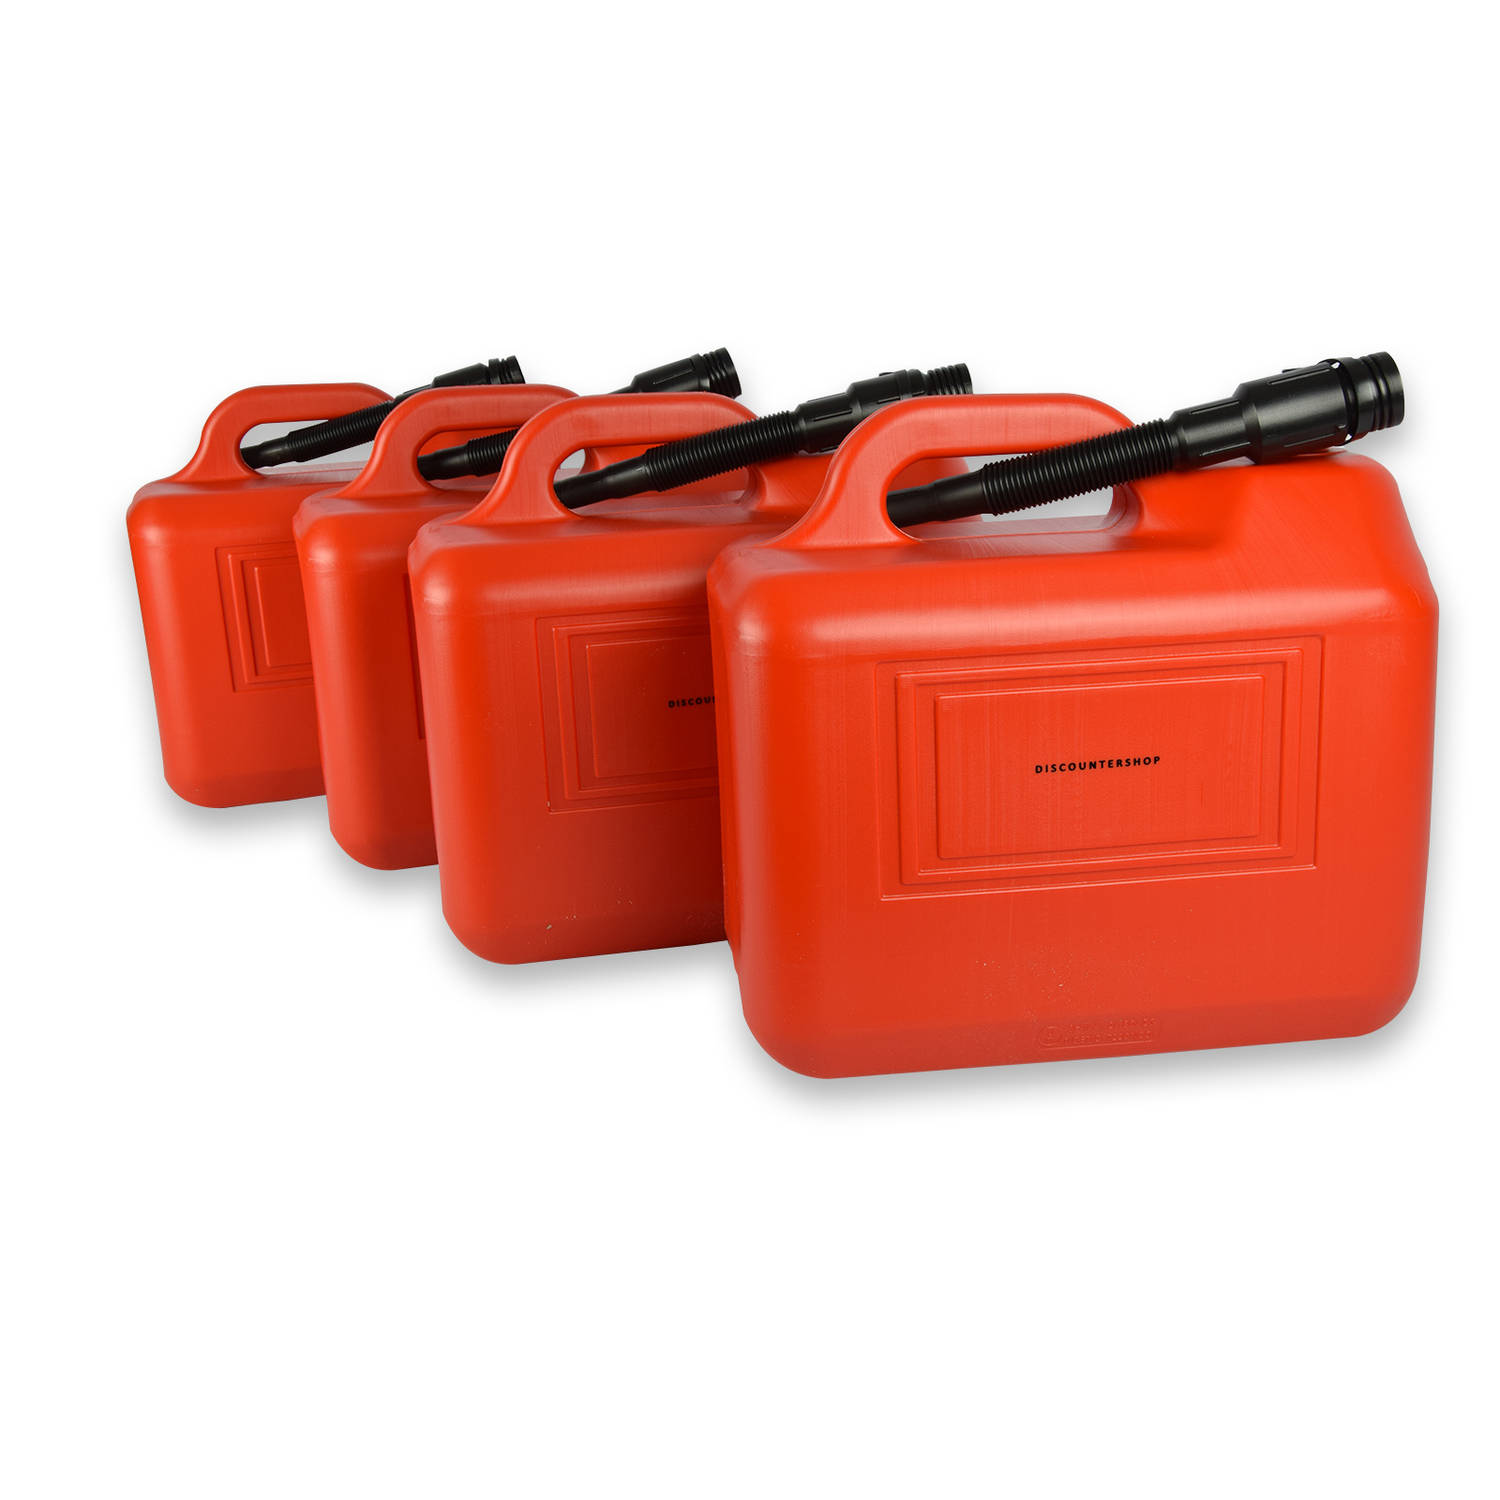 4-Delige Jerrycan Set - 20L elk in Rood Polyethyleen - Met Schentuit & Vergrendelbare Dop - Geschikt voor Brandstof - Ideaal voor Auto & Motor, en Kamperen & Outdoor